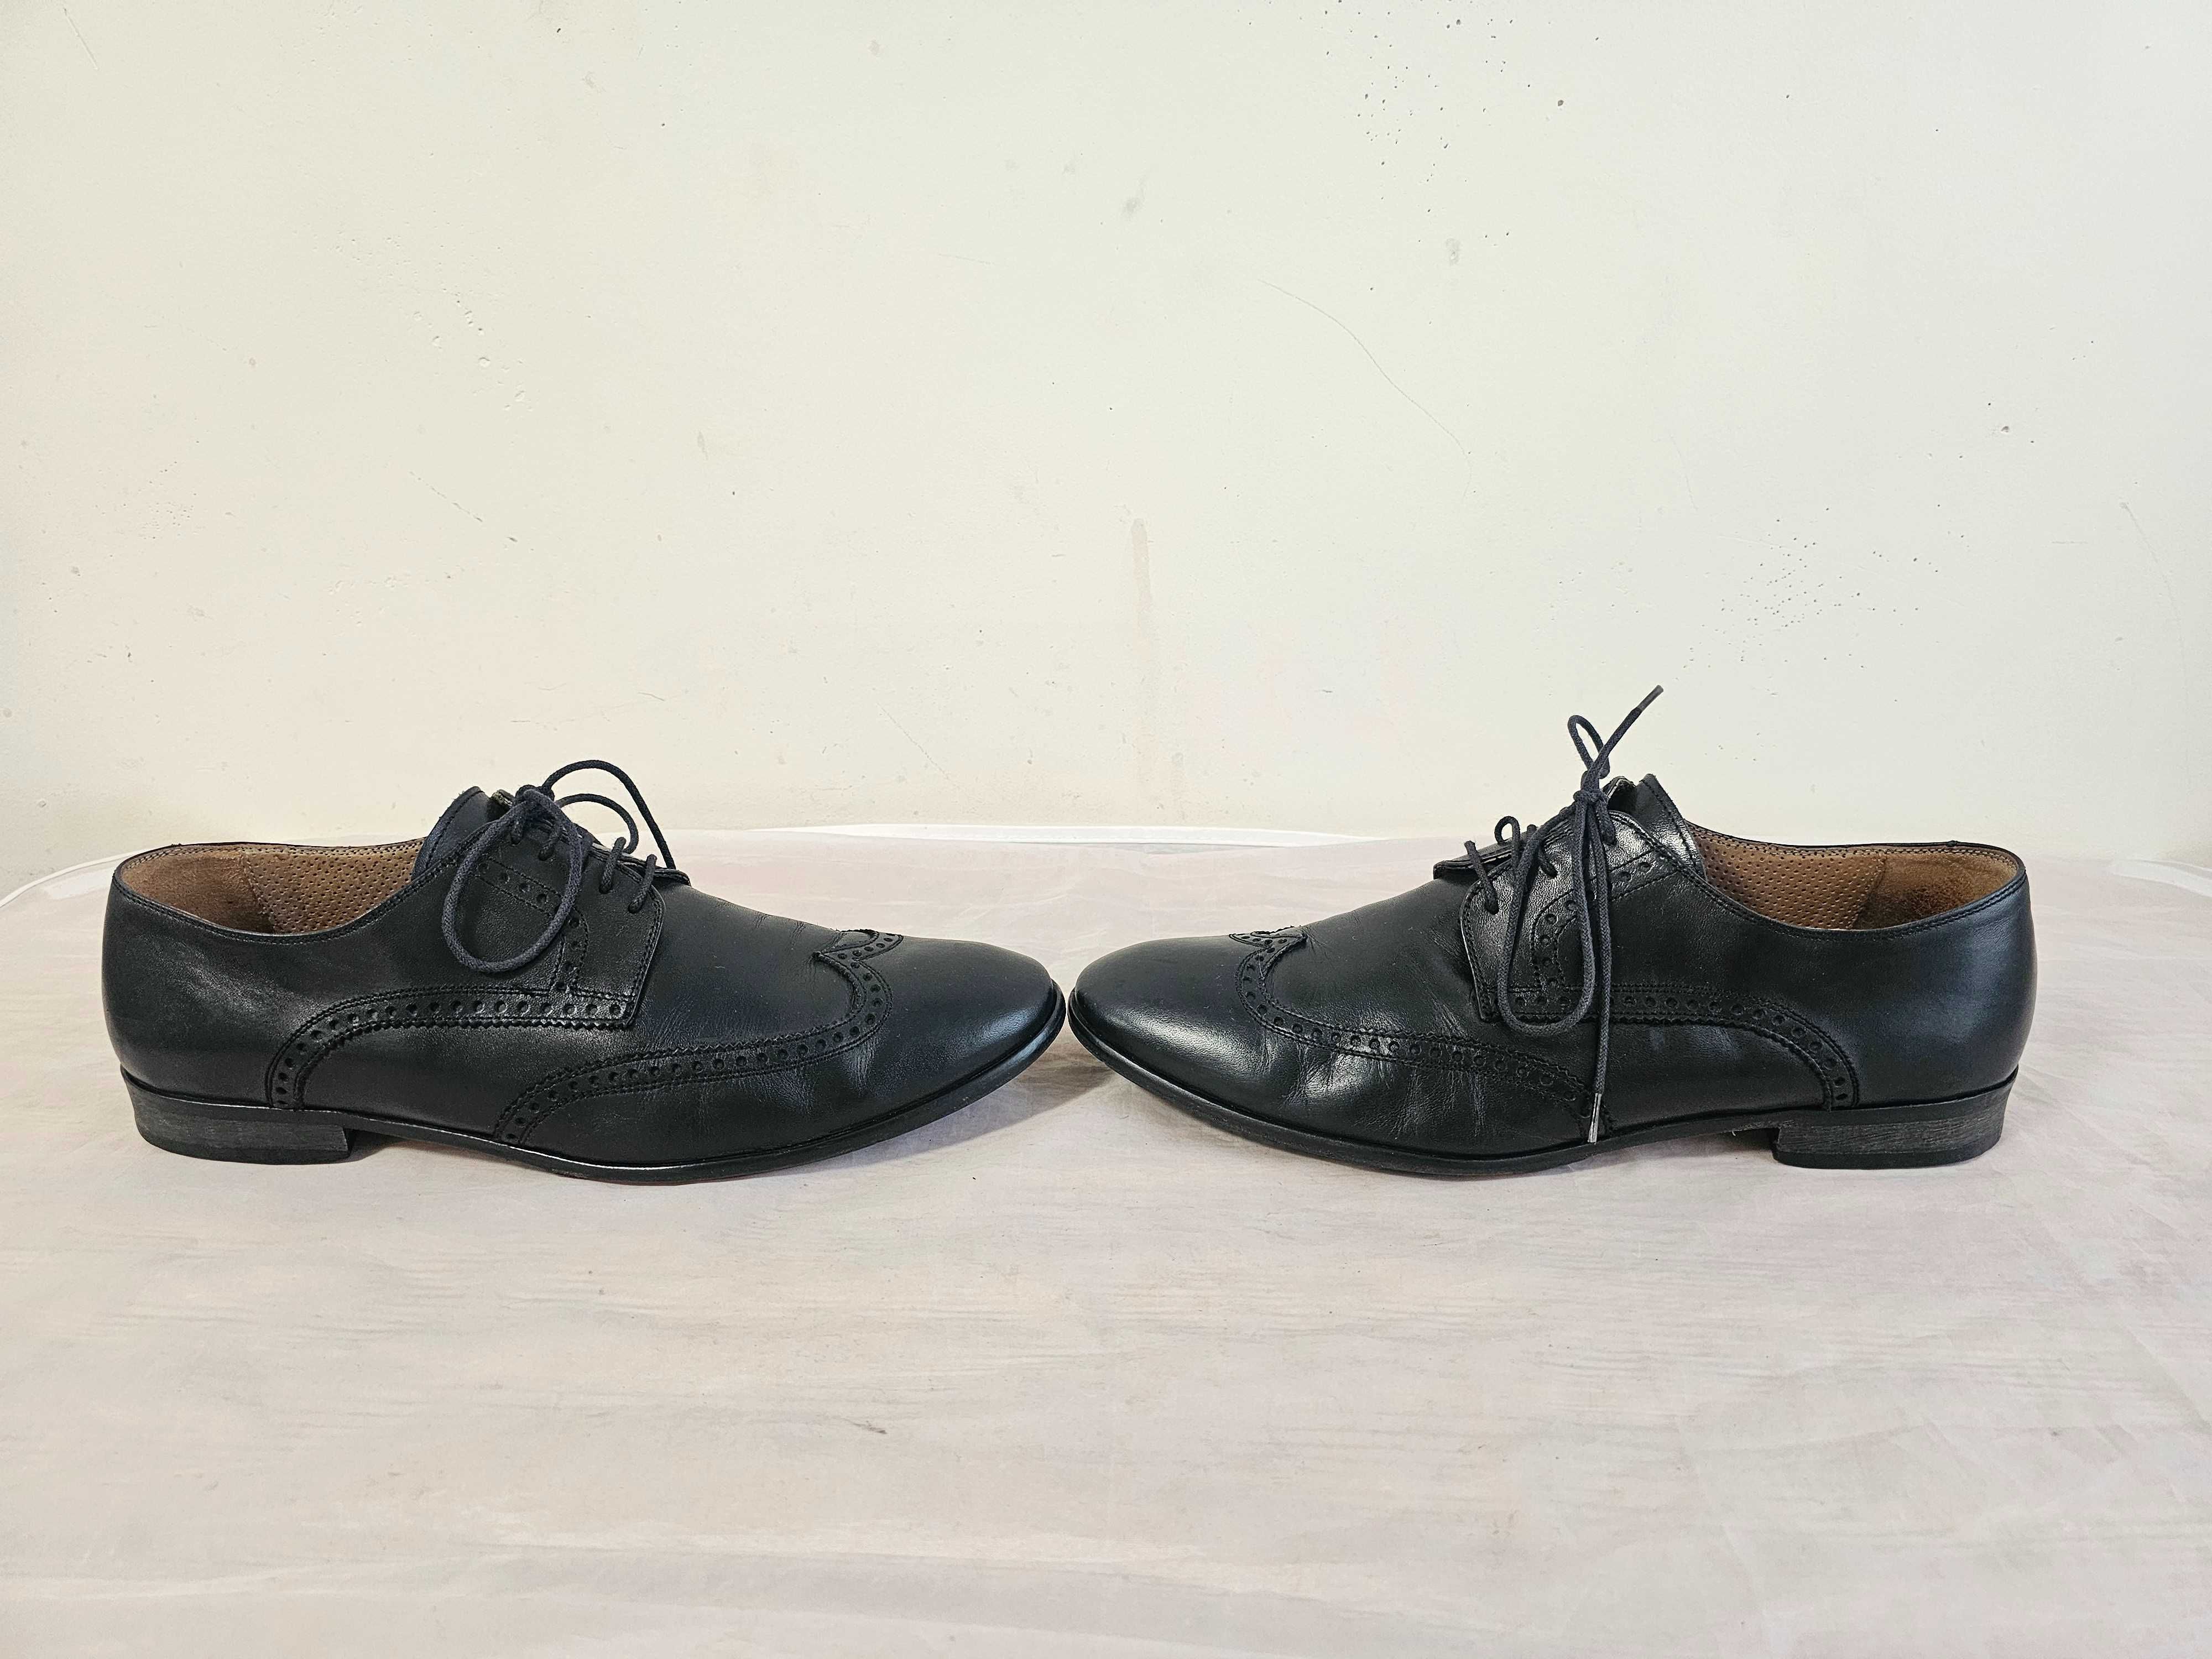 Buty półbuty skórzane Baldinini r. 44 wkładka 29,5 cm